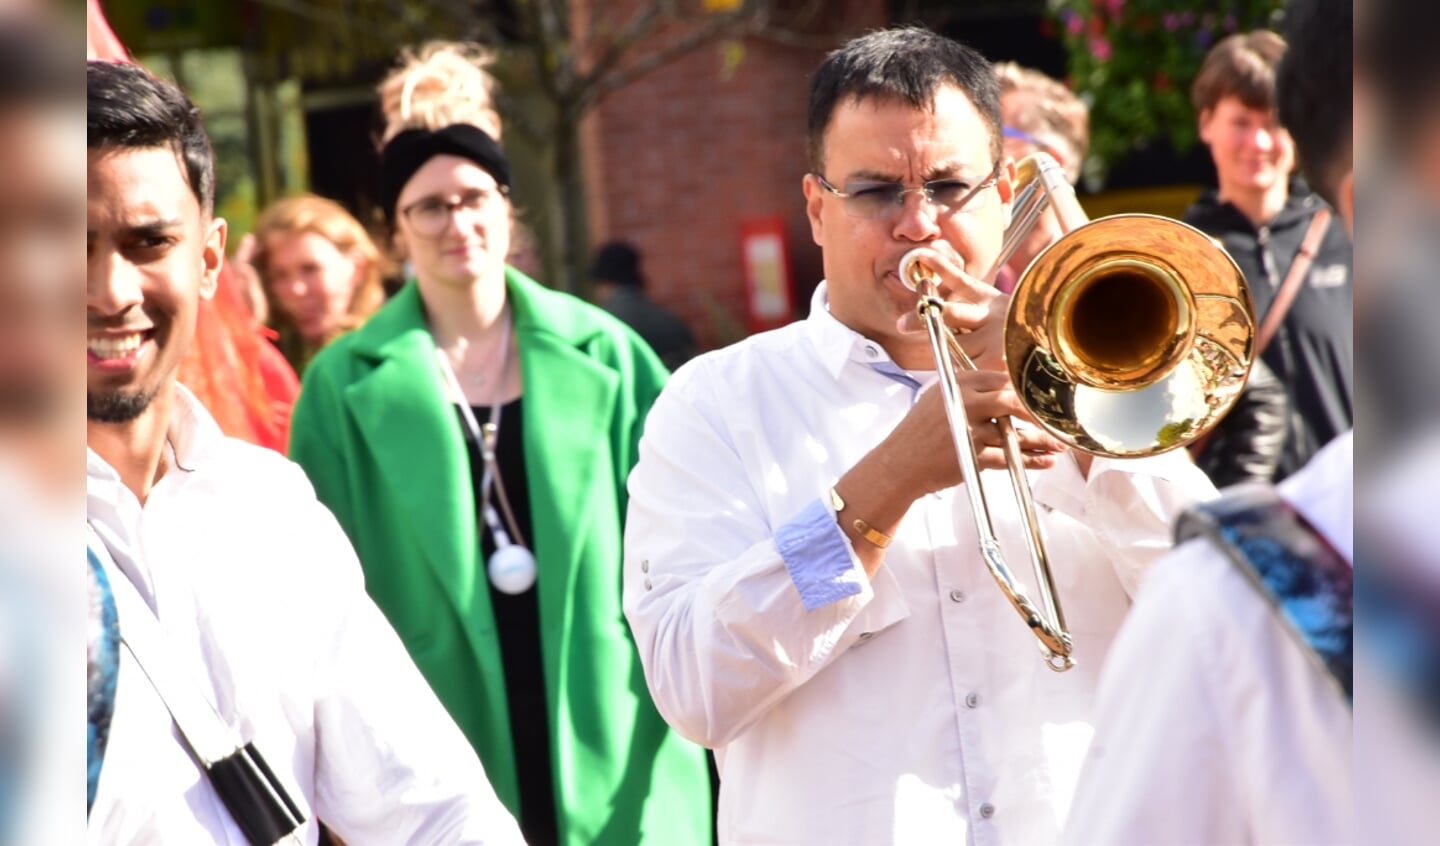 Ook de Unicum Brass Band was van de partij.